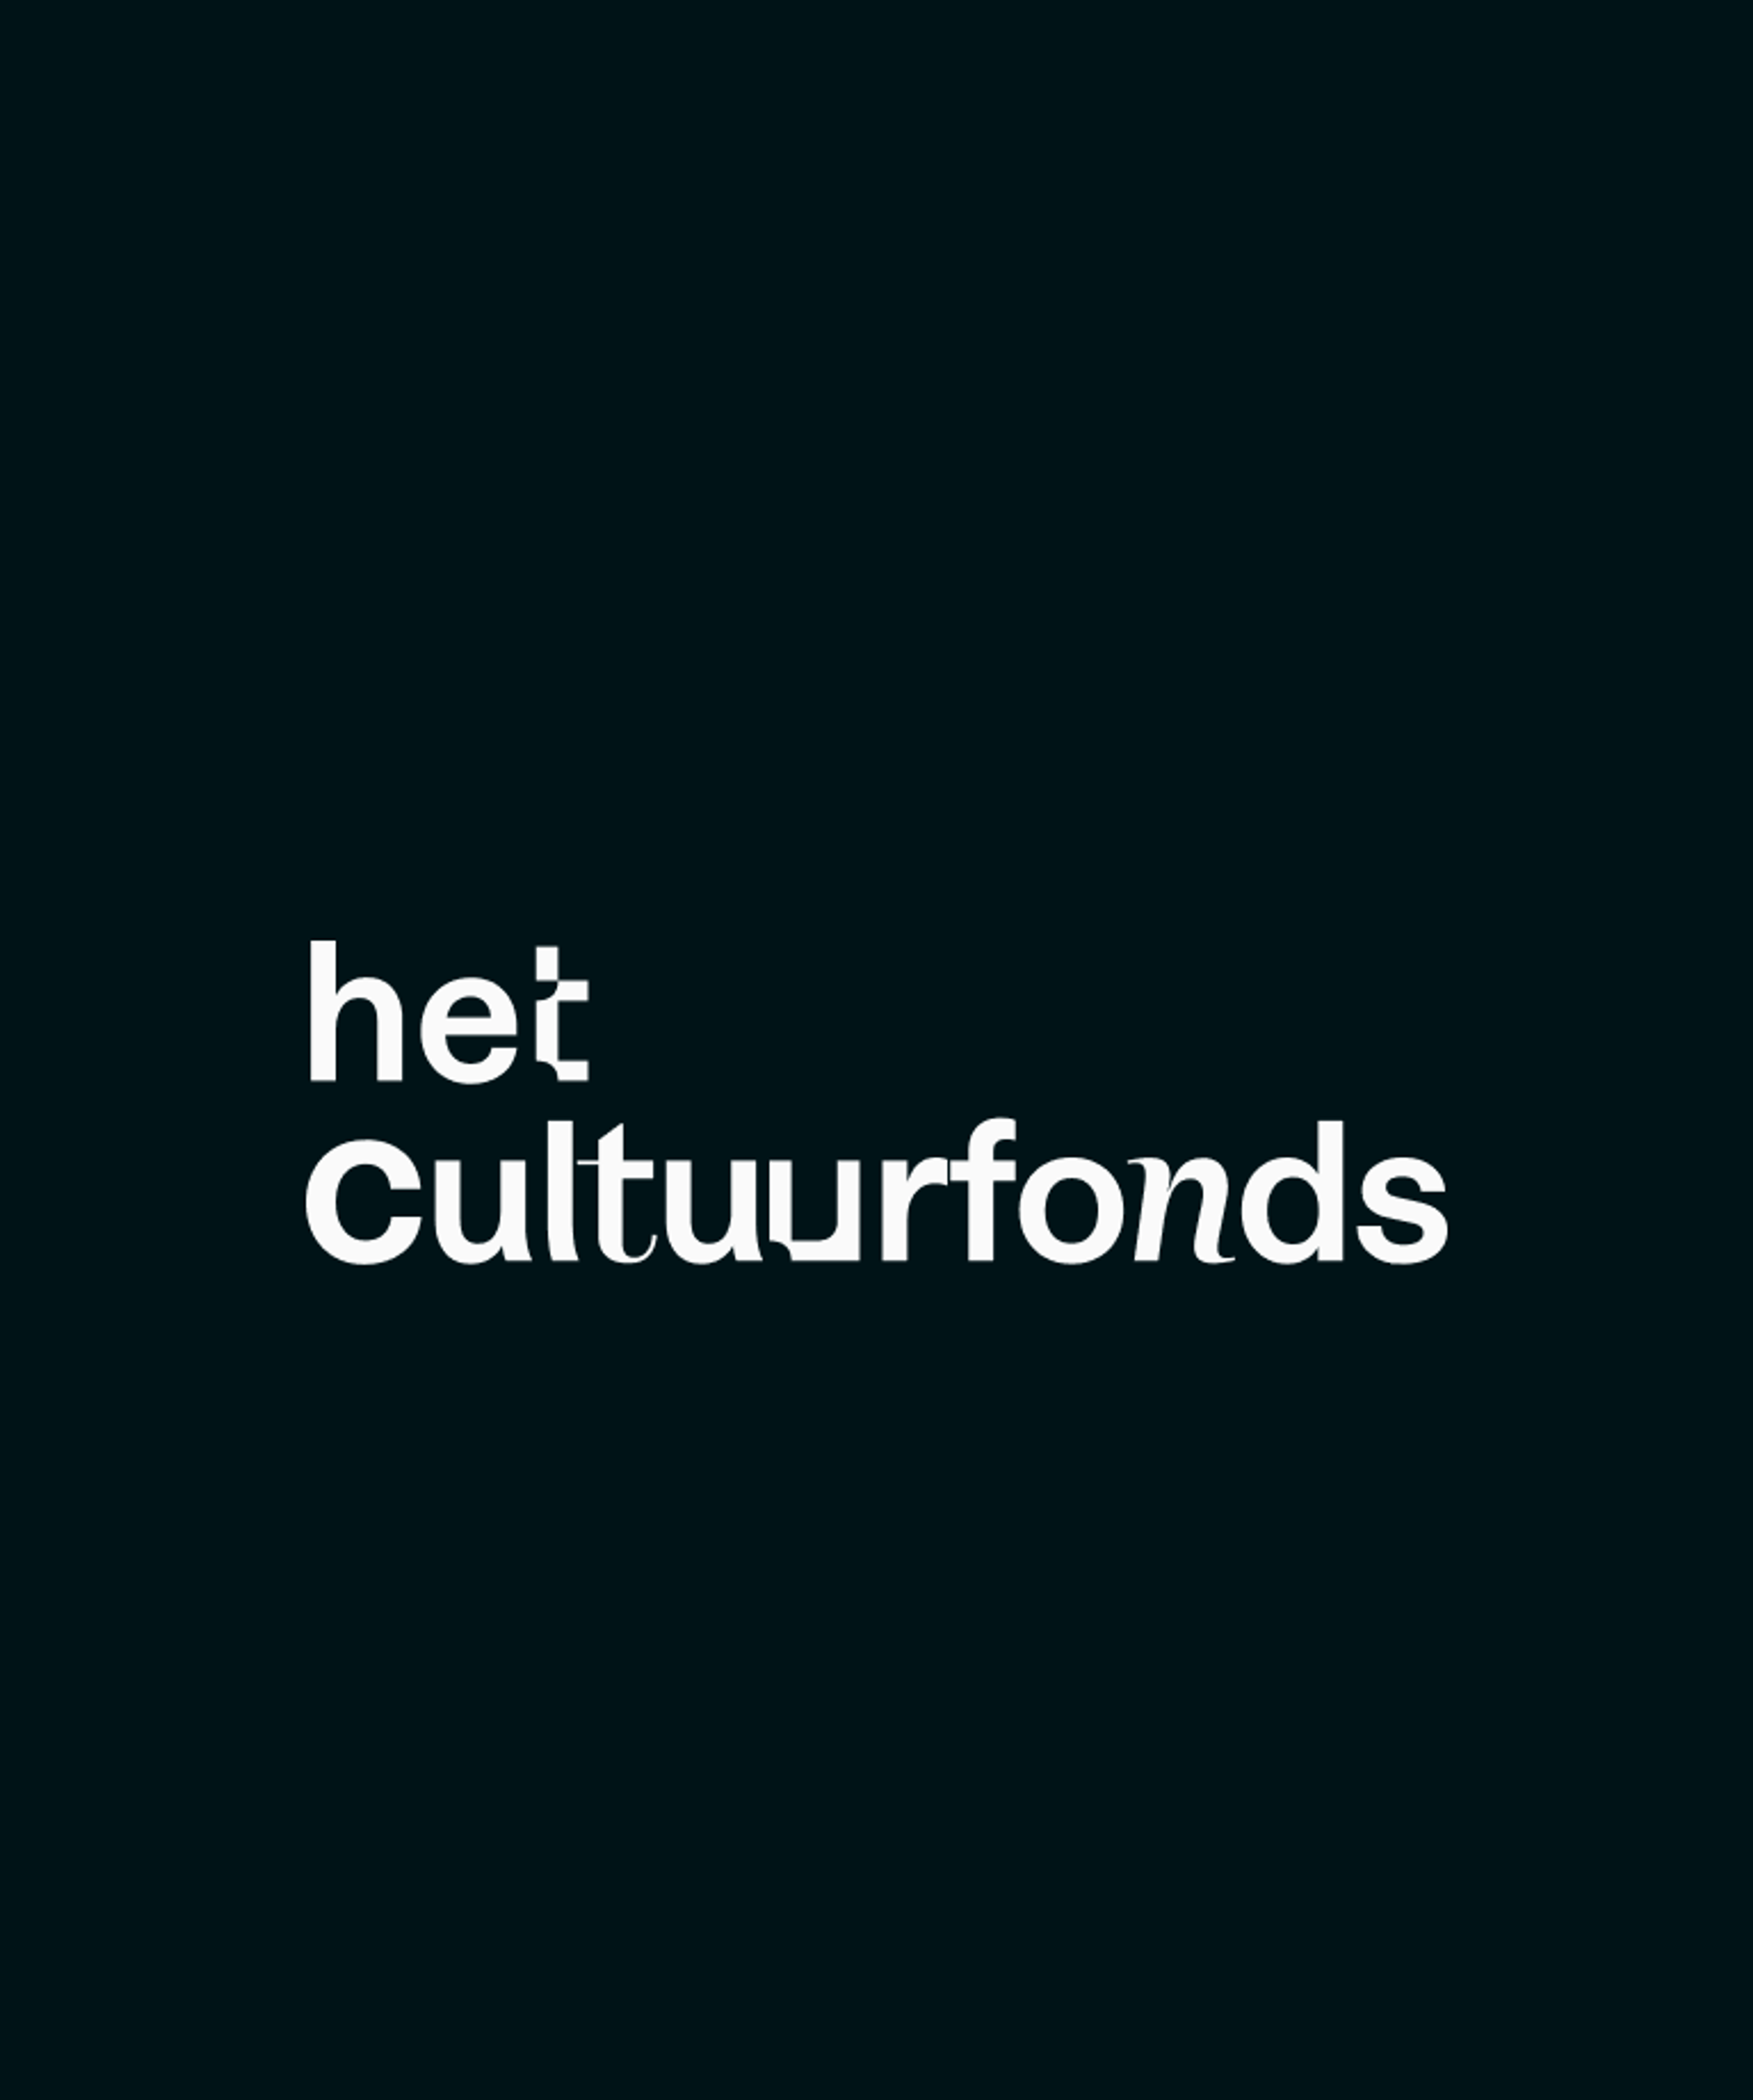 Het cultuurfonds logo